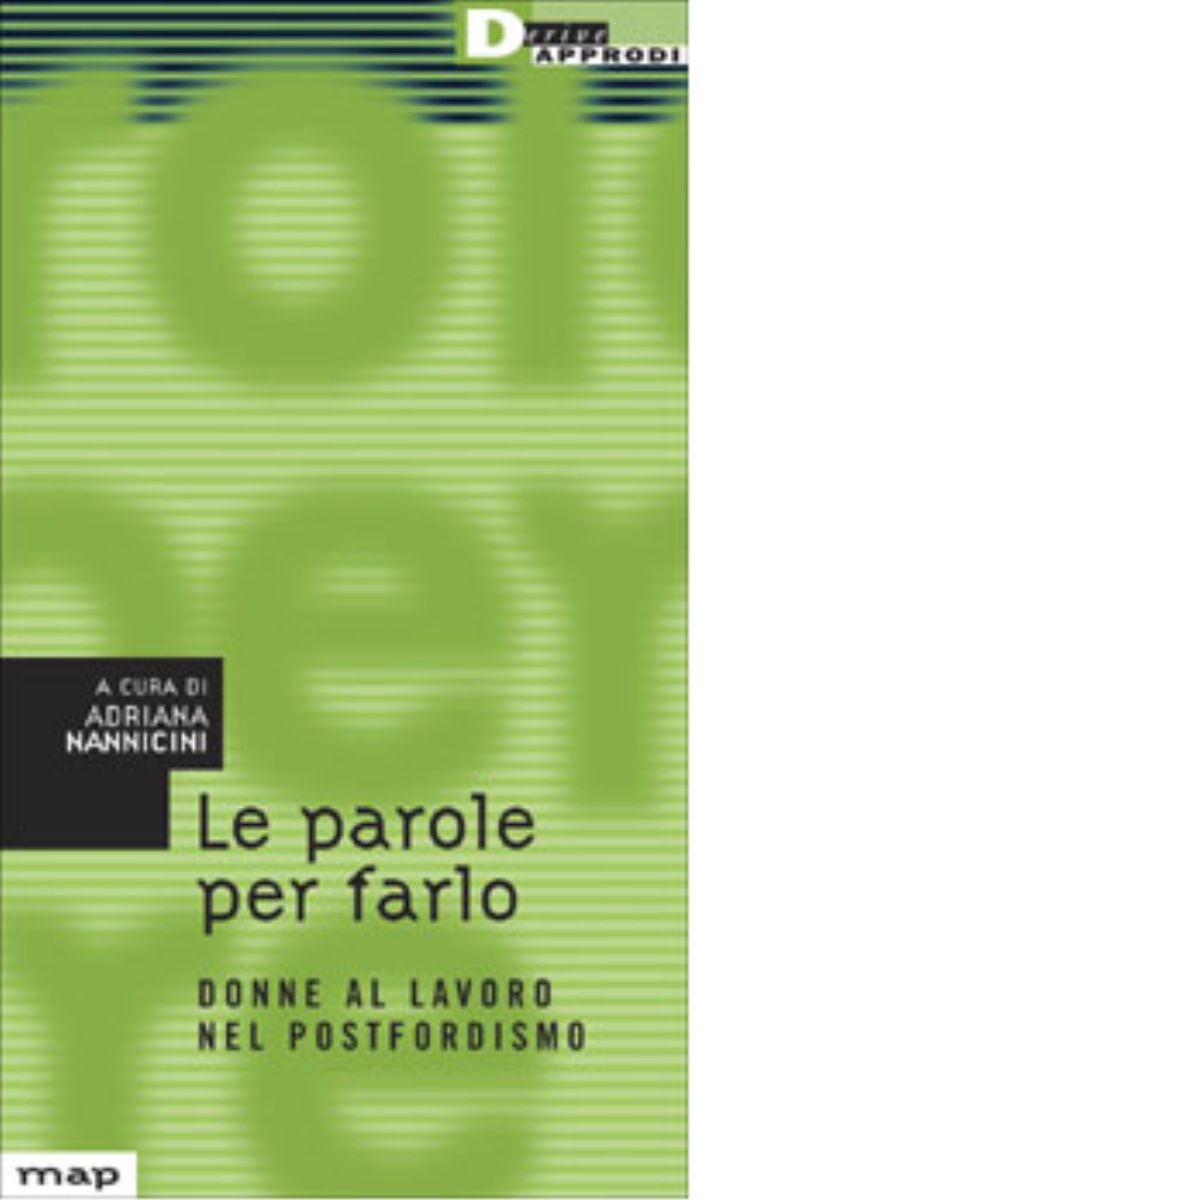 LE PAROLE PER FARLO. di ADRIANA NANNICINI - DeriveApprodi editore, 2003 libro usato